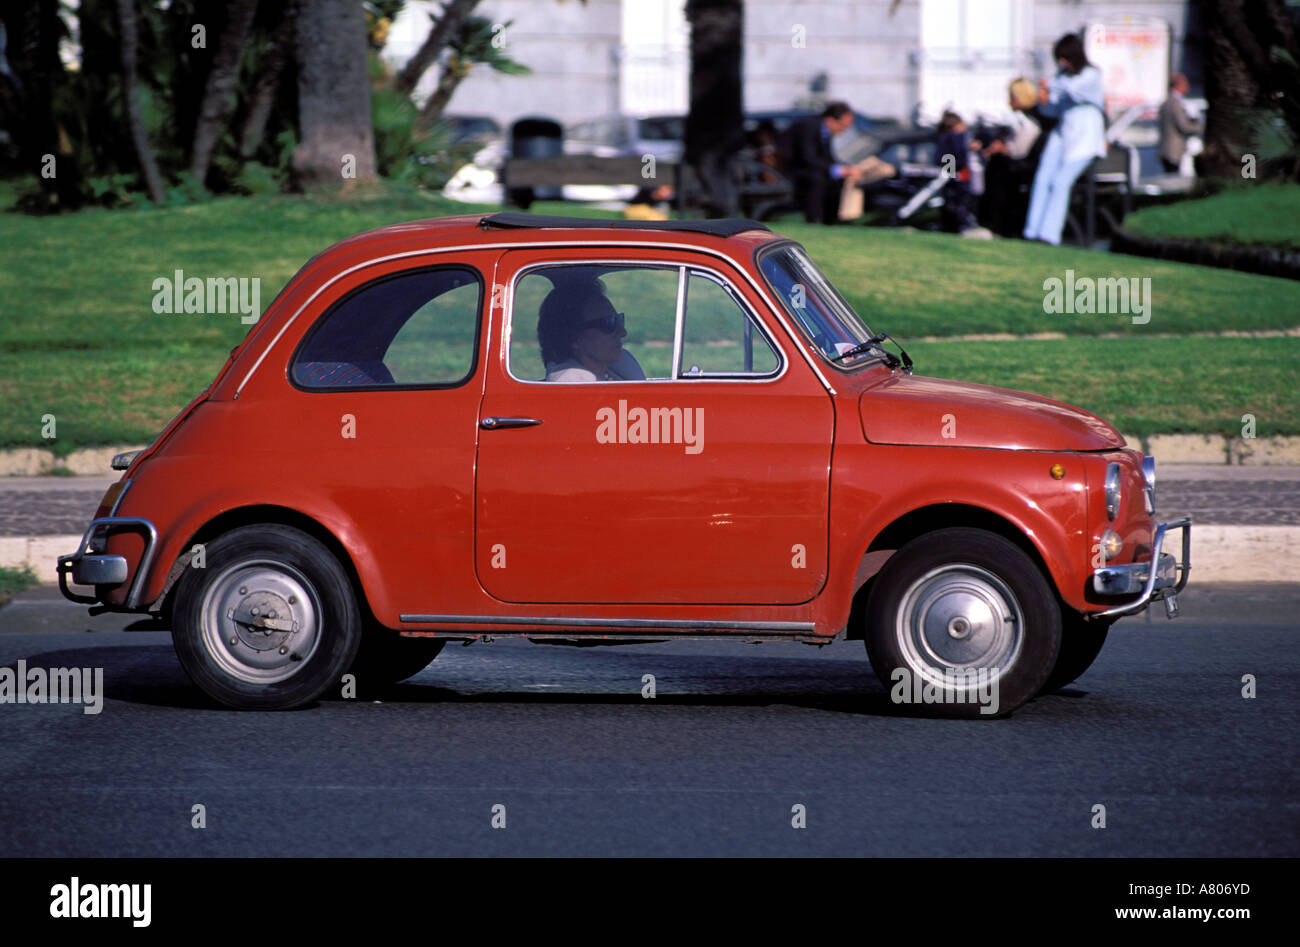 Italy, Campanie, Naples, Fiat 500 car Stock Photo